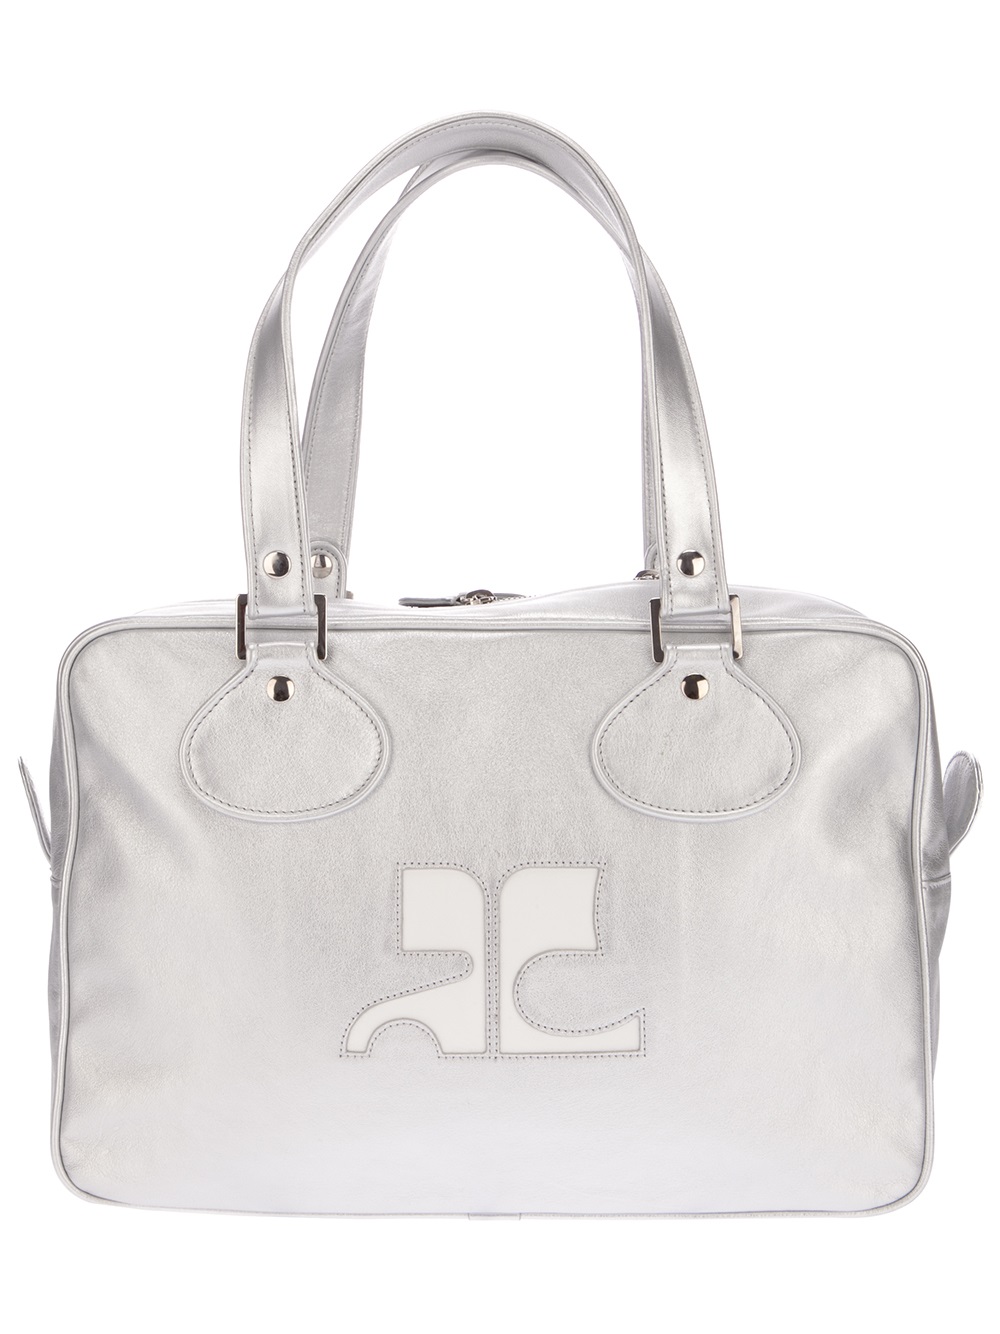 Courreges Medium Tote Bag in Metallic (White) - Lyst